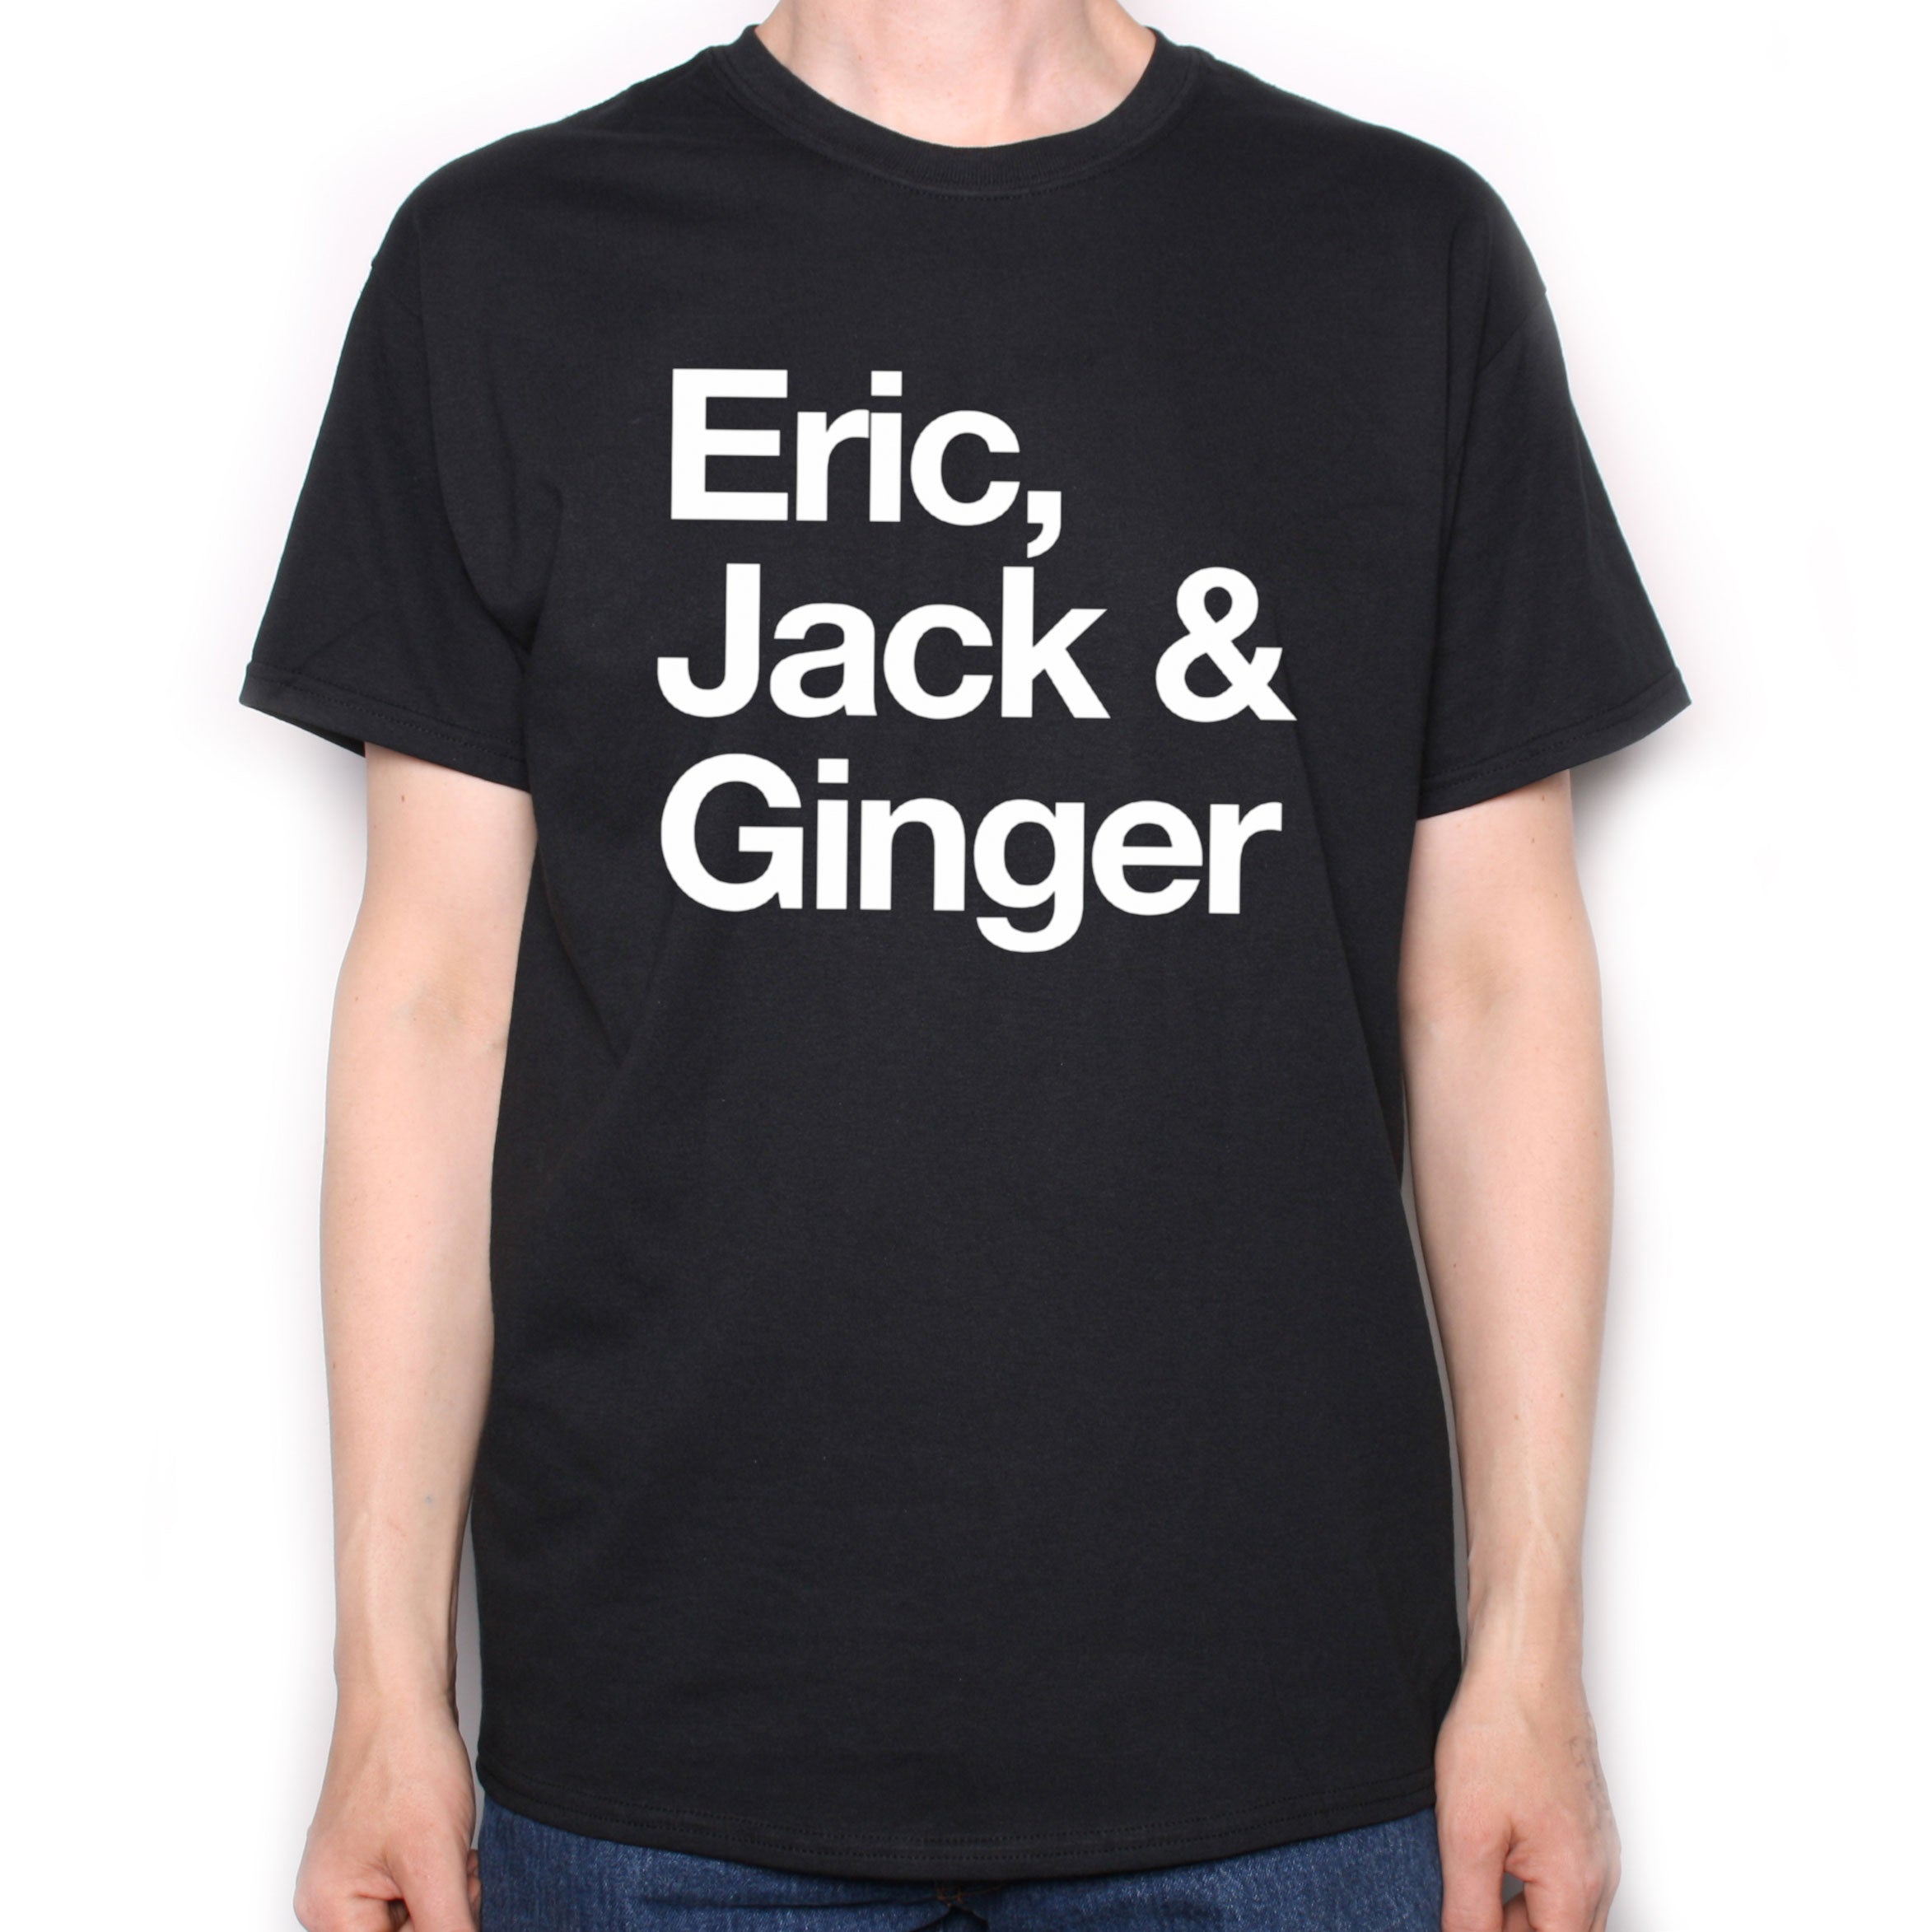 Eric, Jack & Ginger T Shirt - Classic Rock Names Shirt